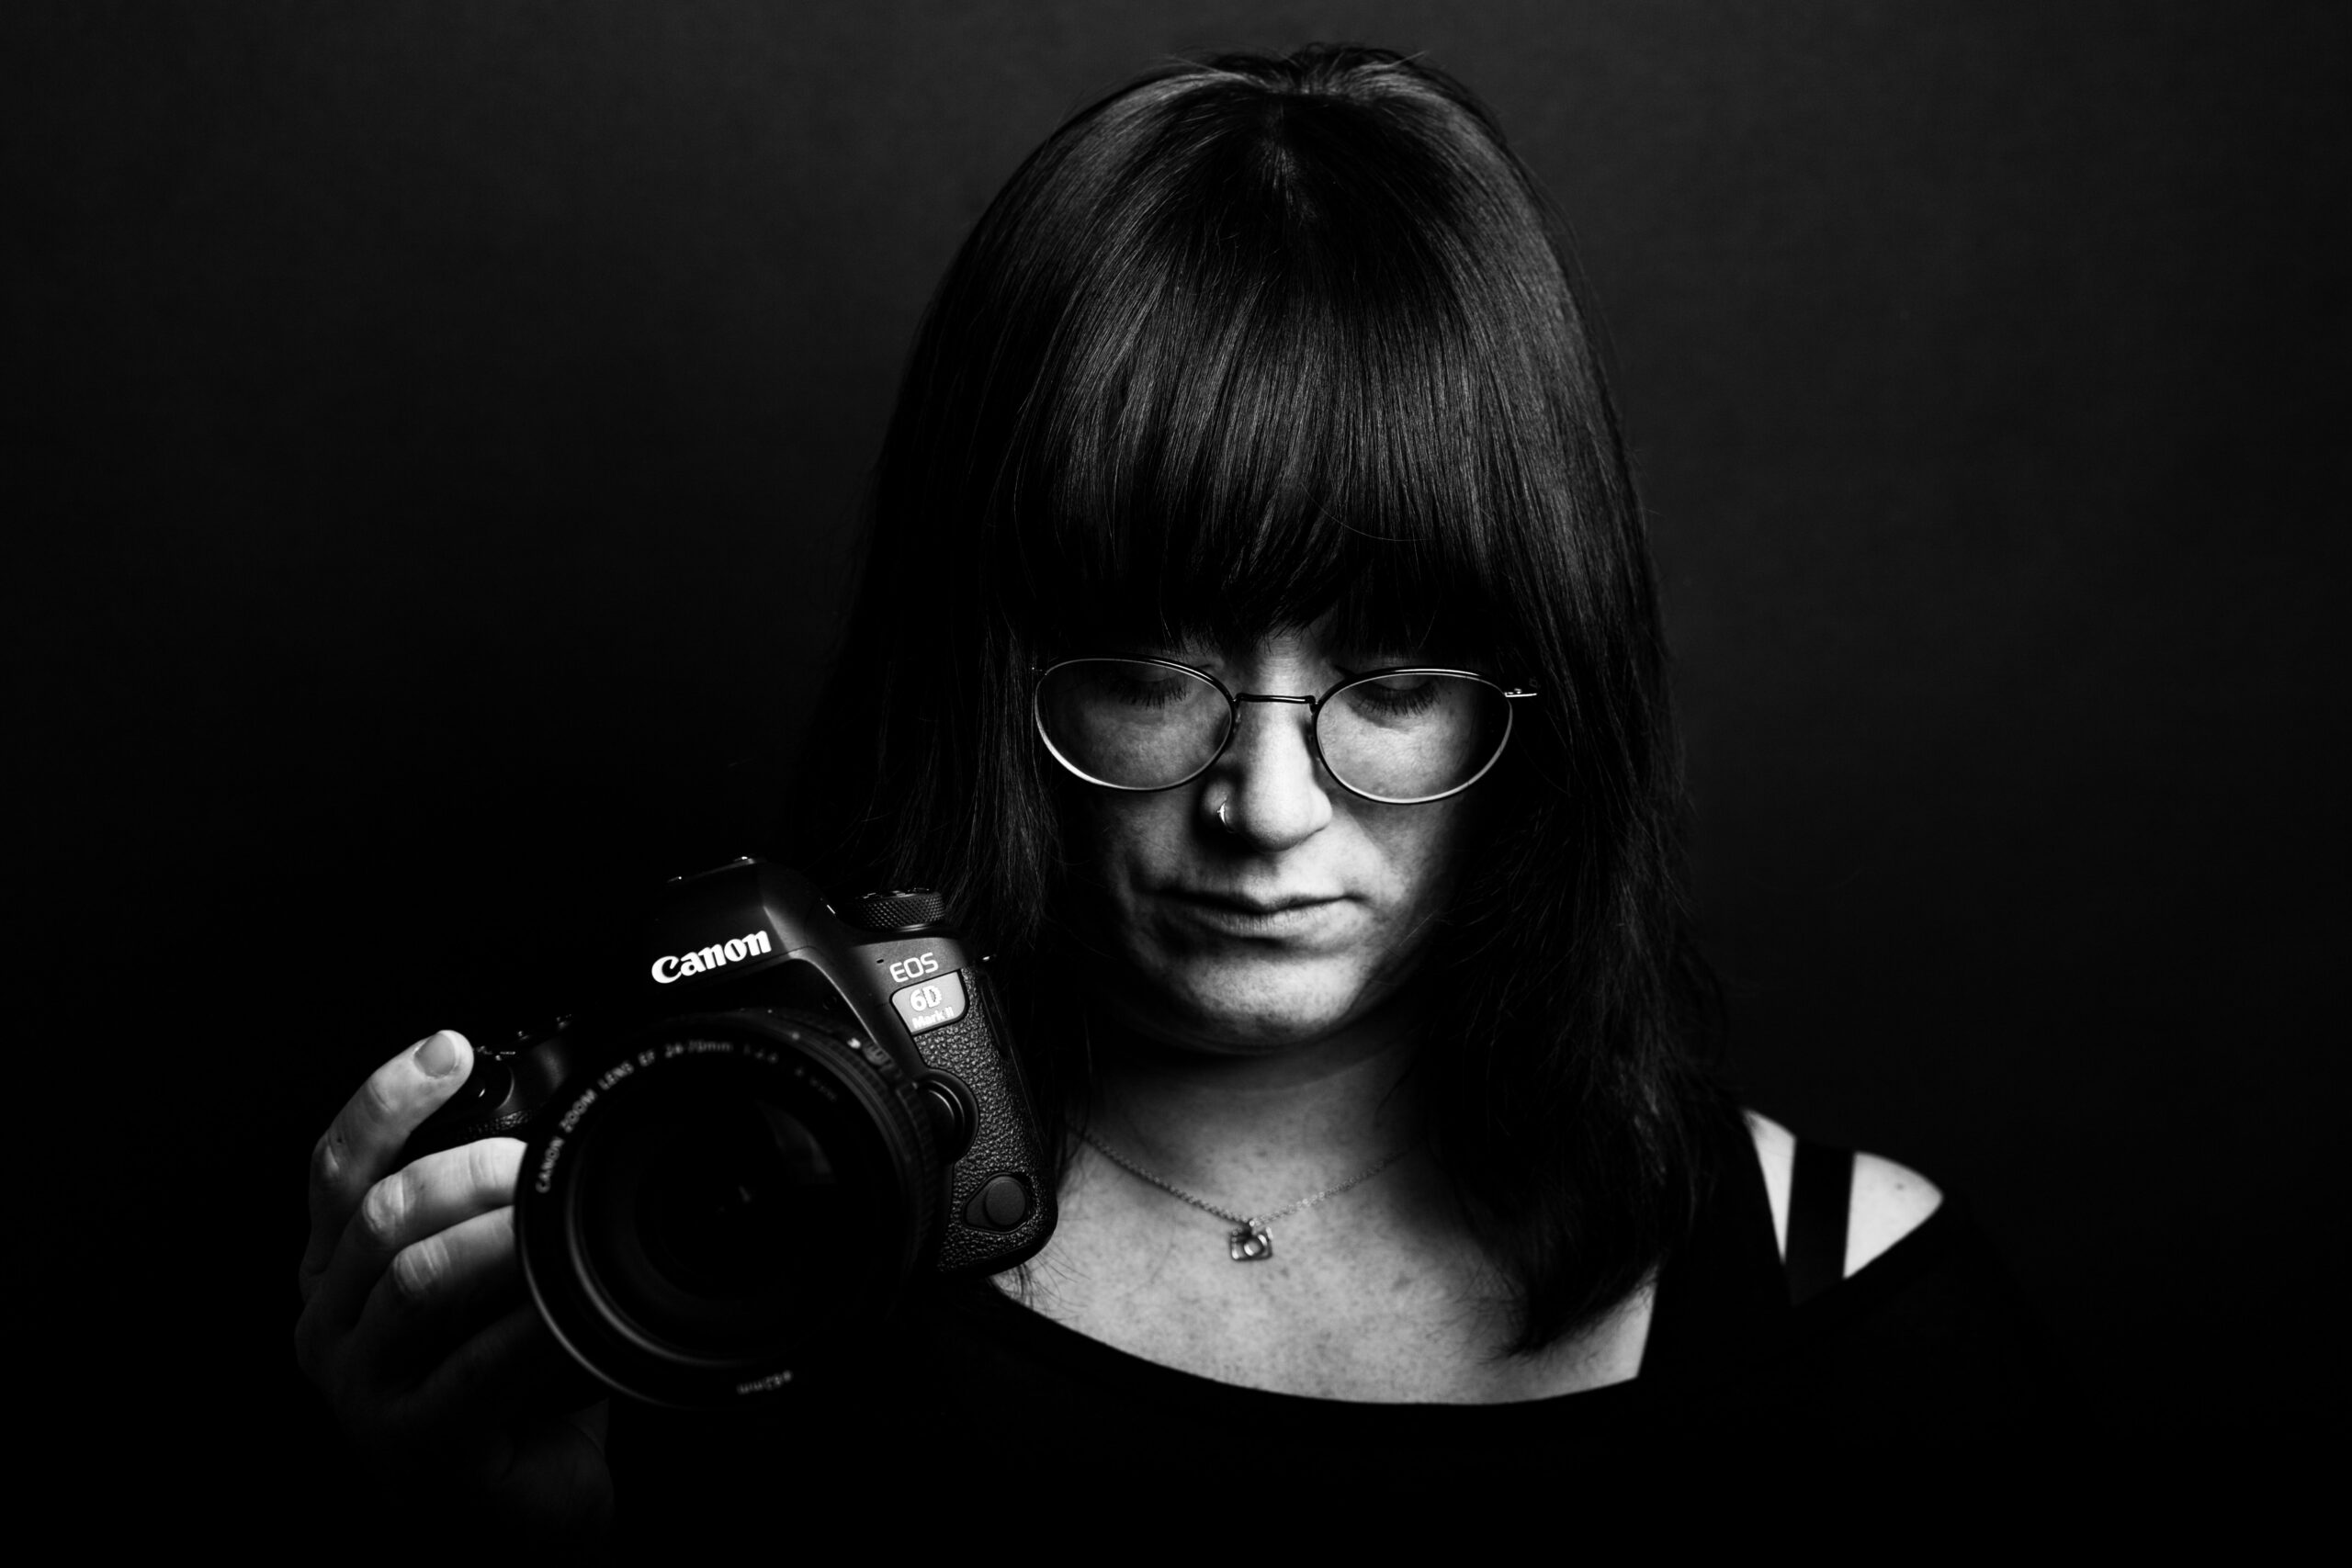 Over JNSSN zwart wit foto van een vrouw met een camera in haar hand